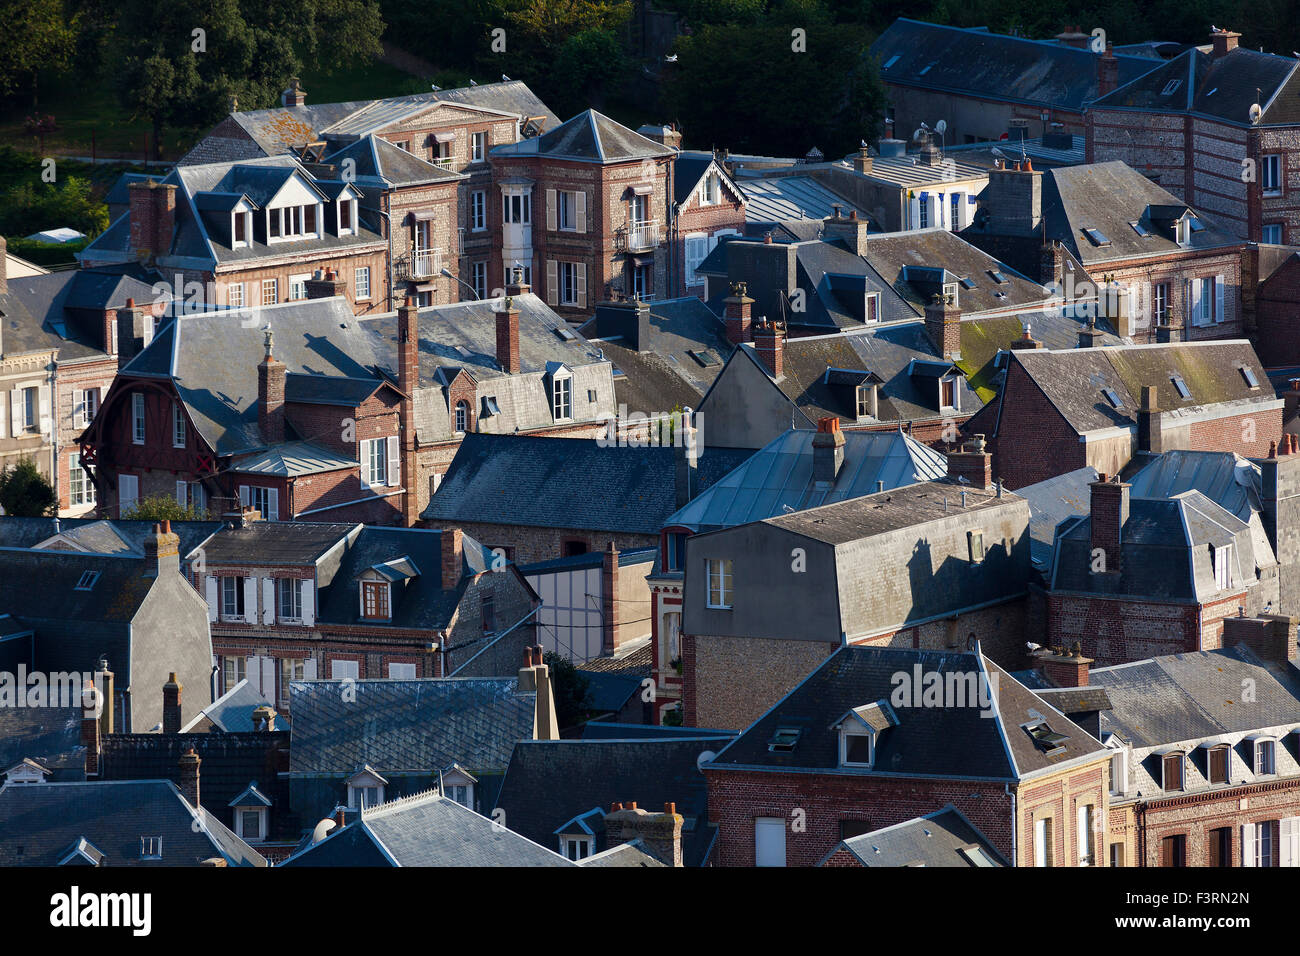 View of Etretat, Cote d'Albatre, Pays de Caux, Seine-Maritime department, Upper Normandy region, France Stock Photo